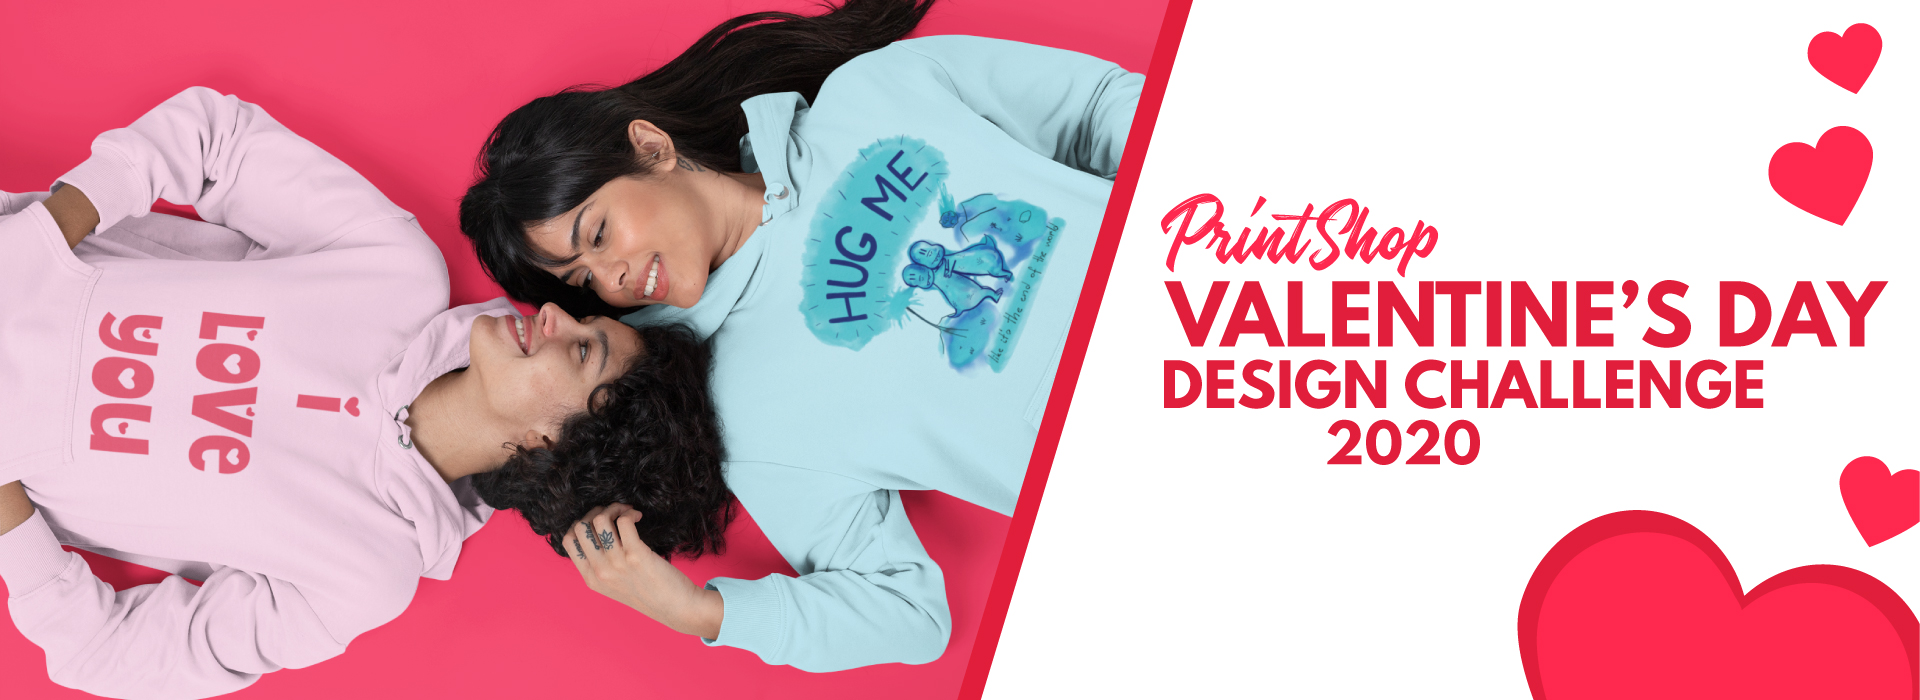 PrintShop Valentine’s Day Design Challenge